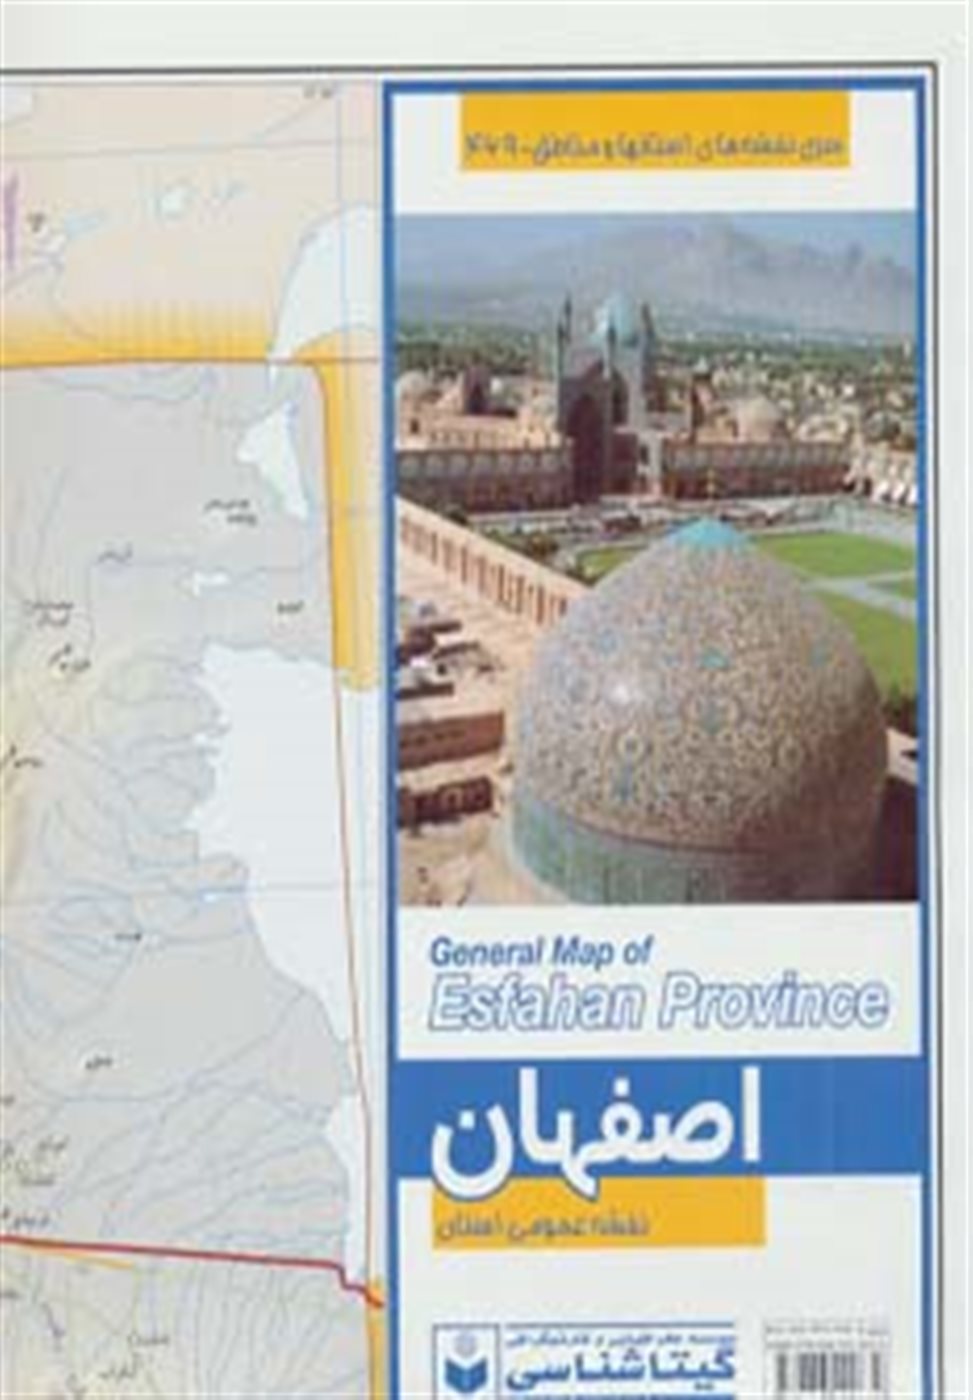 نقشه عمومی استان اصفهان کد 469 